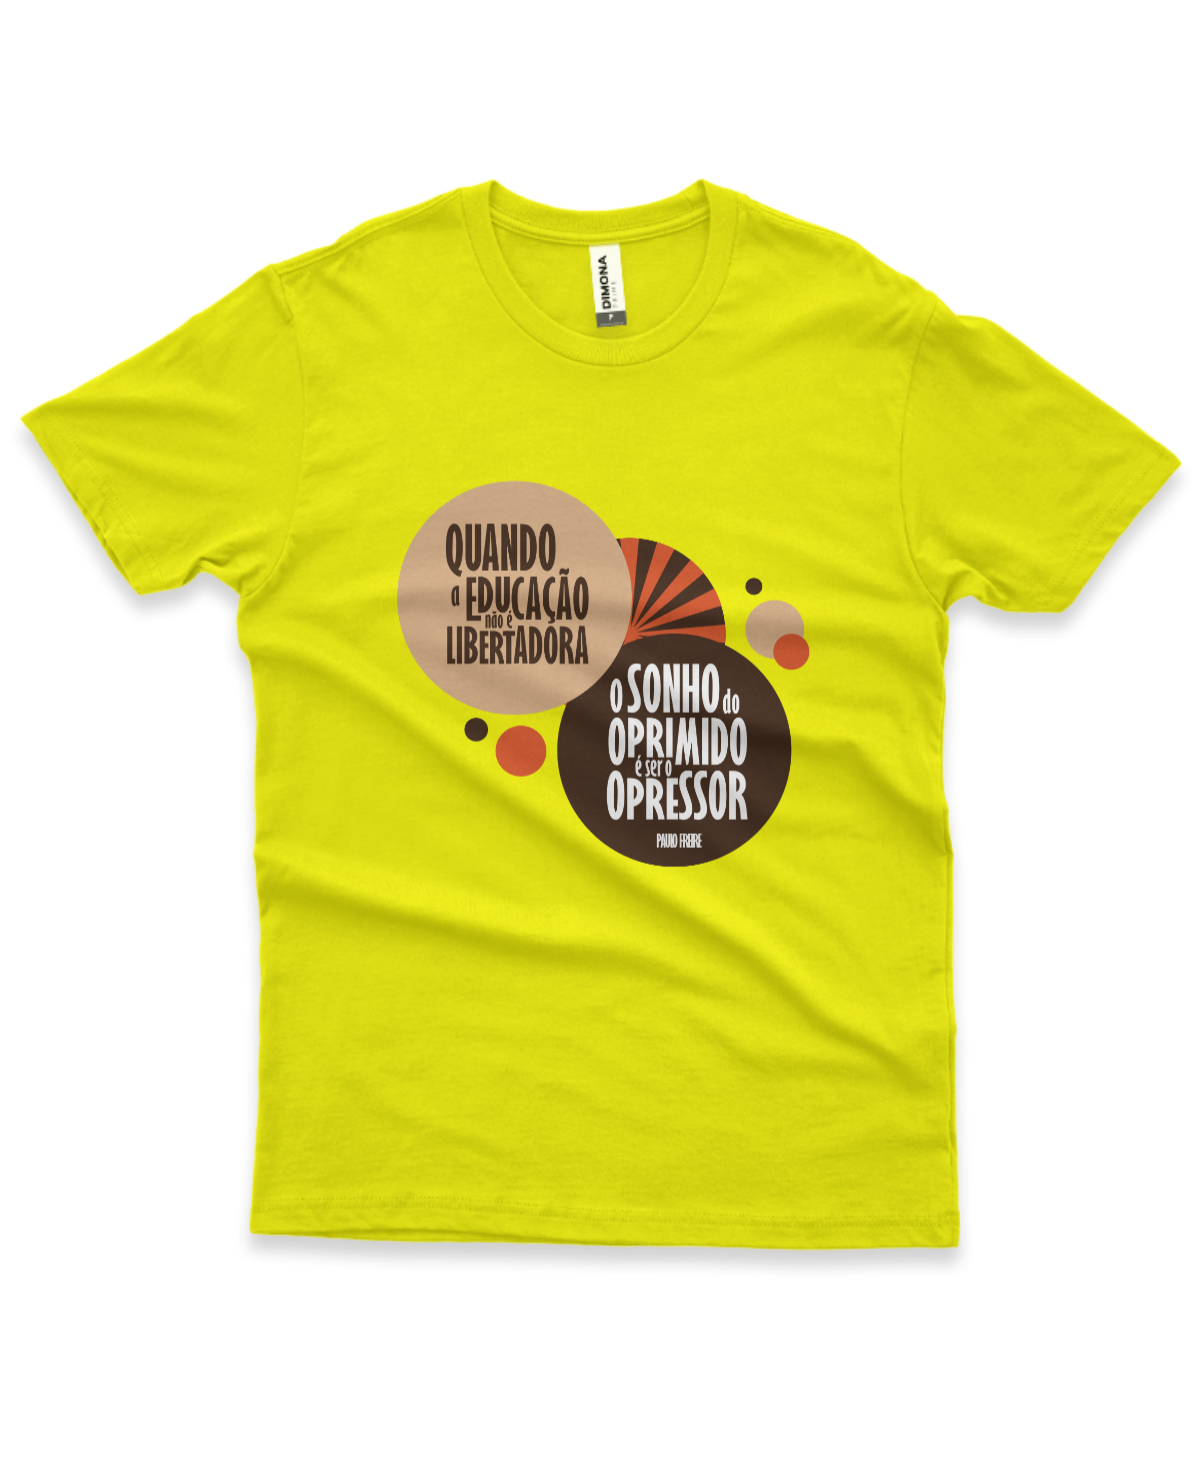 camiseta masculina cor amarelo canário com a frase "quando a educação não é libertadora, o sonho do oprimido é ser o opressor"